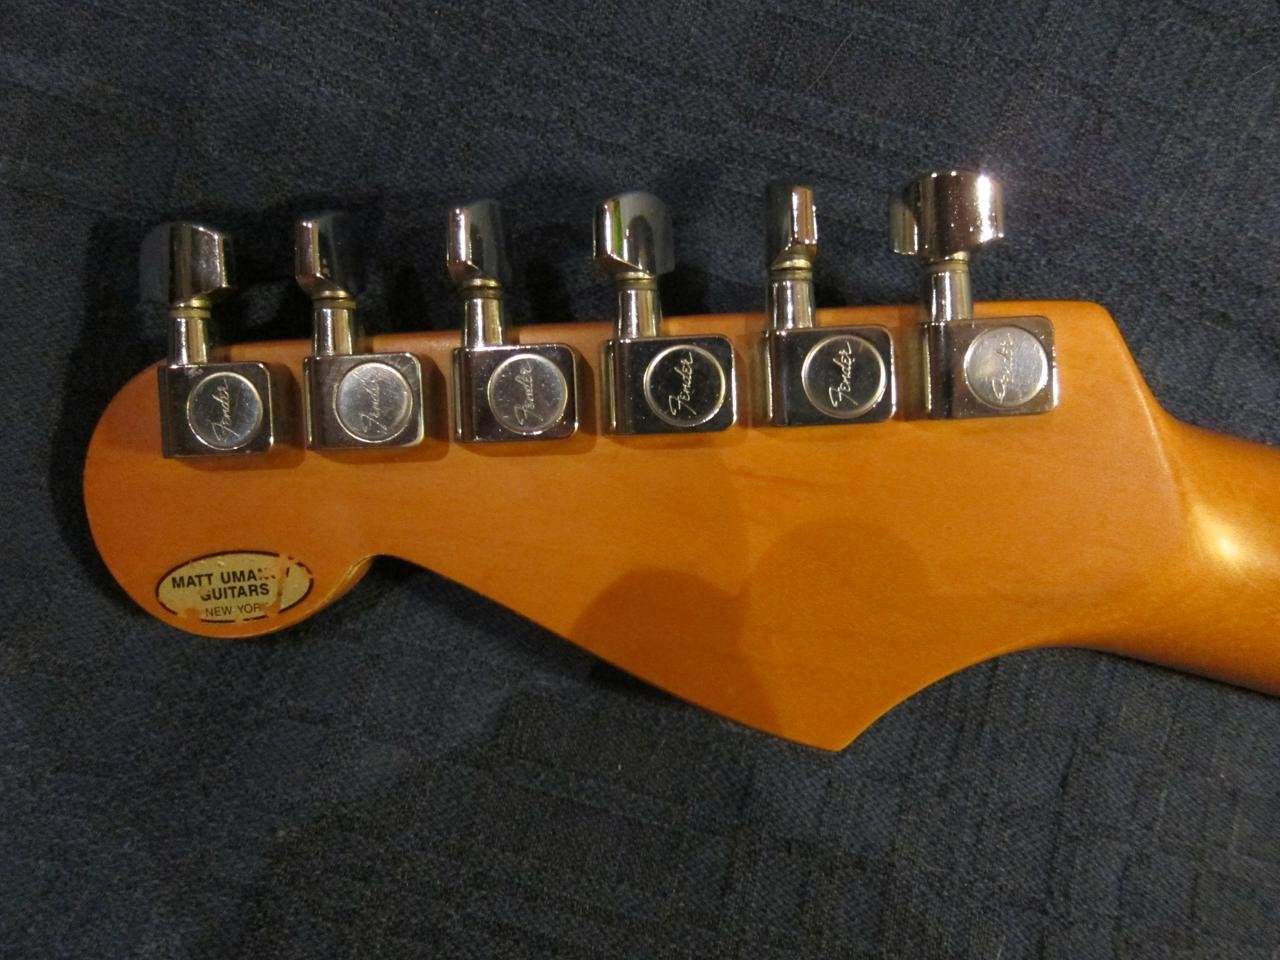 Fender Stratocaster 1989